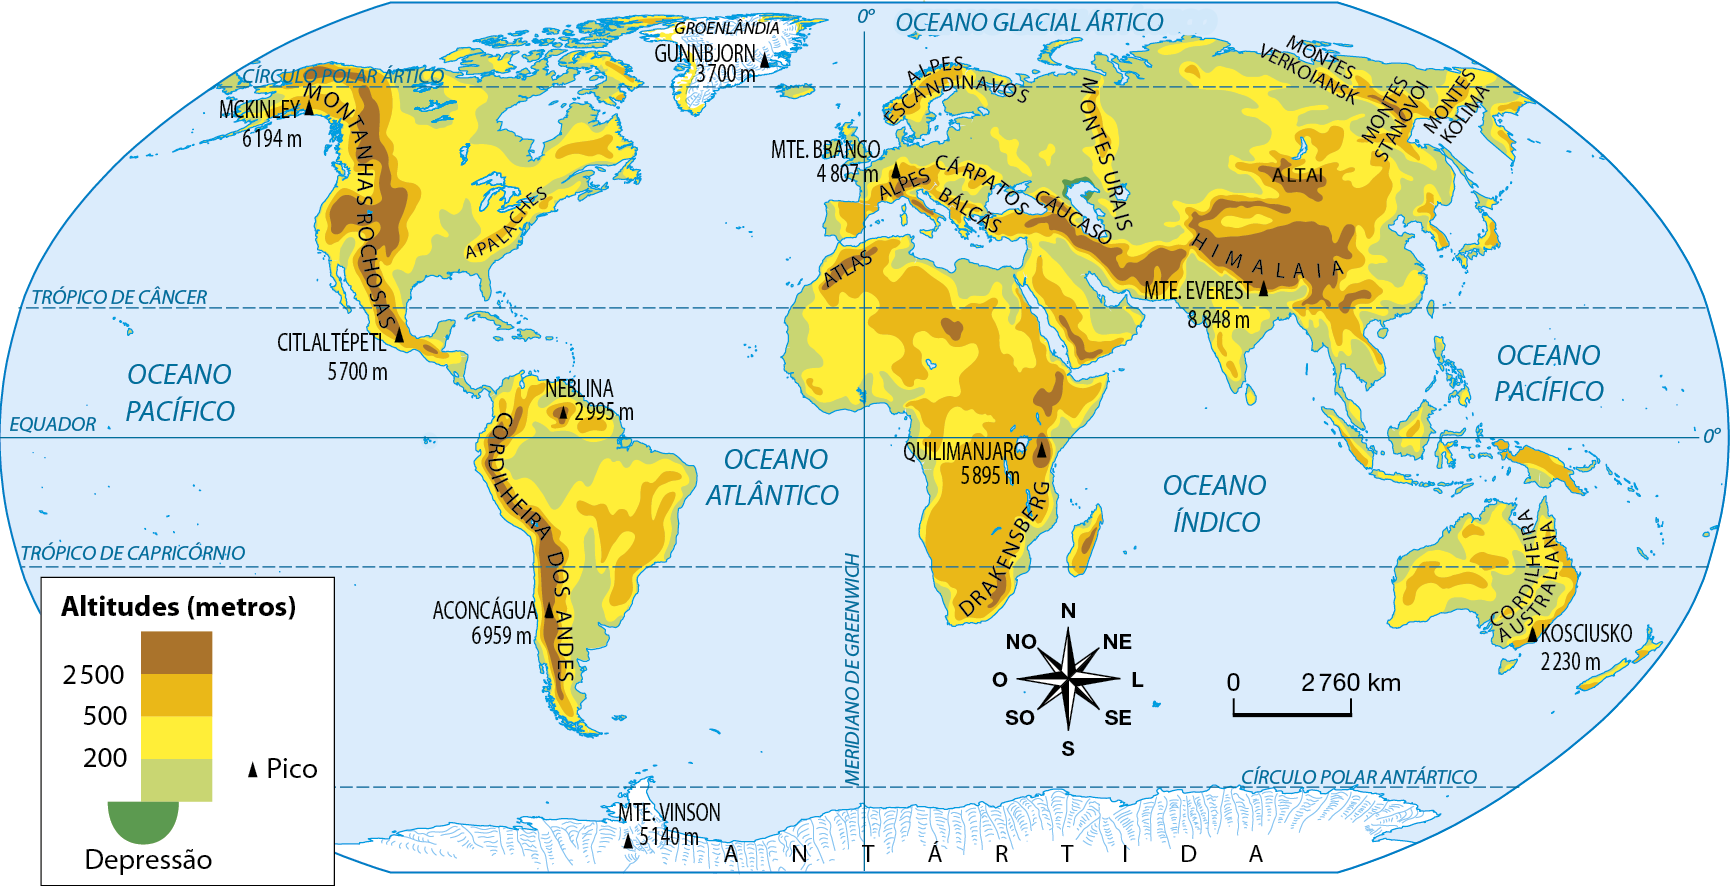 Mapa. Planisfério: principais cadeias de montanhas Planisfério mostrando as diferentes altitudes e os picos do mundo. As altitudes mais elevadas estão representas em marrom-escuro, enquanto as menos elevadas estão em verde. As depressões estão representadas em verde escuro e os picos por um triângulo preto. As altitudes mais elevadas, de 2.500 metros ou mais, estão: na costa oeste da América, ou seja, na Cordilheira dos Andres e Montanhas Rochosas; Na África, próximo ao Quilimanjaro, na cadeia montanhosa do Atlas e em Drakensberg, à sudeste do continente; Na Europa Ocidental, na região dos Alpes e dos Balcãs; No Cáucaso, entre a Europa e a Ásia, e ao sul dessa formação; na Ásia central, na extensa região ocupada pelo Himalaia, e no sudoeste do Oriente Médio. As altitudes que variam entre 200 e mais de 500 metros, estão: na América do Norte e na América do Sul, em extensas áreas do norte, do leste e do centro; na África, em praticamente todo o continente, com exceção do litoral e das cadeias montanhosas e montes mais elevados; na Europa, nas porções central, leste e sul do continente, além dos Alpes Escandinavos, ao norte; na Ásia, em extensas porções do centro e do leste do continente, bem como no Oriente Médio e nos Montes Urais, na Rússia; a maior parte da Oceania, com altitudes mais elevadas no litoral leste australiano e em Nova Guiné. As altitudes abaixo de 200 metros, estão: na porção sul e ao norte da América do Sul, na América Central e no litoral da América do Norte; em praticamente todo o litoral da África; na porção norte e litorânea da Europa; uma enorme faixa do nordeste da Europa ao centro-norte da Ásia, ocupando praticamente todo o território russo; em áreas próximas ao litoral asiático e ao sul do Himalaia. Depressão: litoral norte do Mar Cáspio, localizado próximo ao Cáucaso e aos Montes Urais. Picos: Monte Everest 8.848 metros. Aconcágua 6.959 metros. Mackinley 6.194 metros. Quilimanjaro 5.895 metros. Citlaltépetl 5.700 metros. Monte Vinson 5.140 metros . Monte Branco 4.807 metros. Gunbijorn 3.700 metros. Neblina 2.995 metros. Kosciusko 2.230 metros. Na parte inferior, rosa dos ventos e escala de 0 a 2.760 quilômetros.